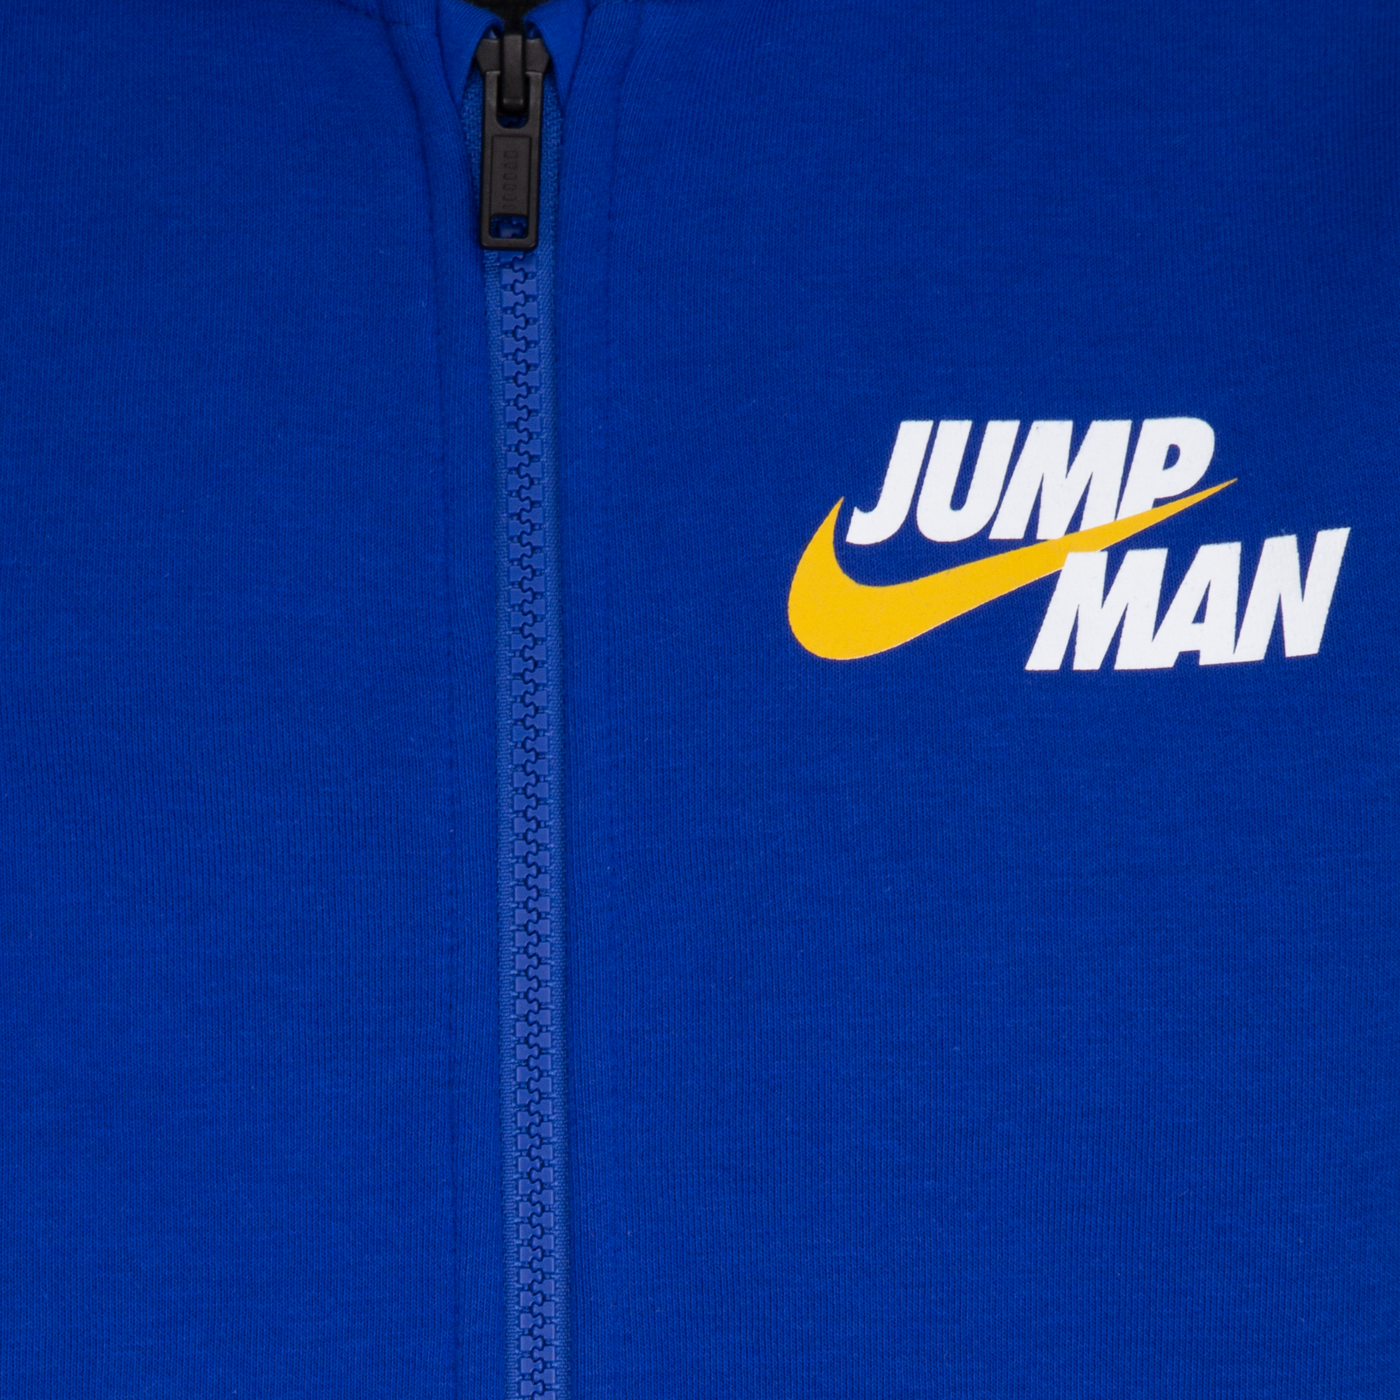 Jordan Jumpman By Nike Full-Zip Hoodie Sweatshirt Jordan   